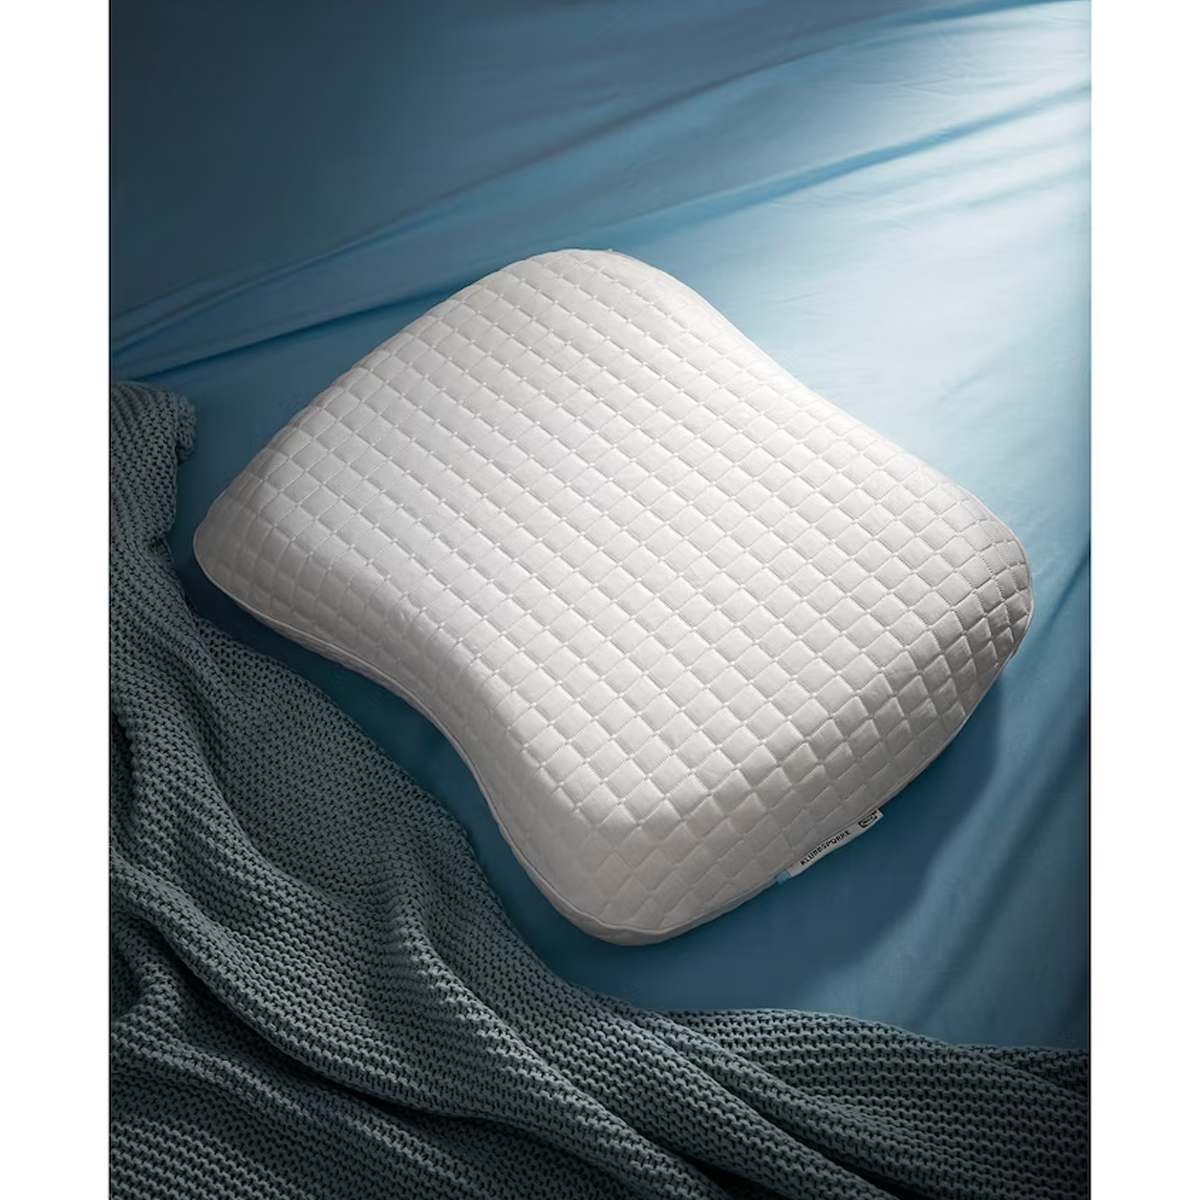 KLUBBSPORRE ergonomski jastuk, bočno/na leđima, 44x56 cm